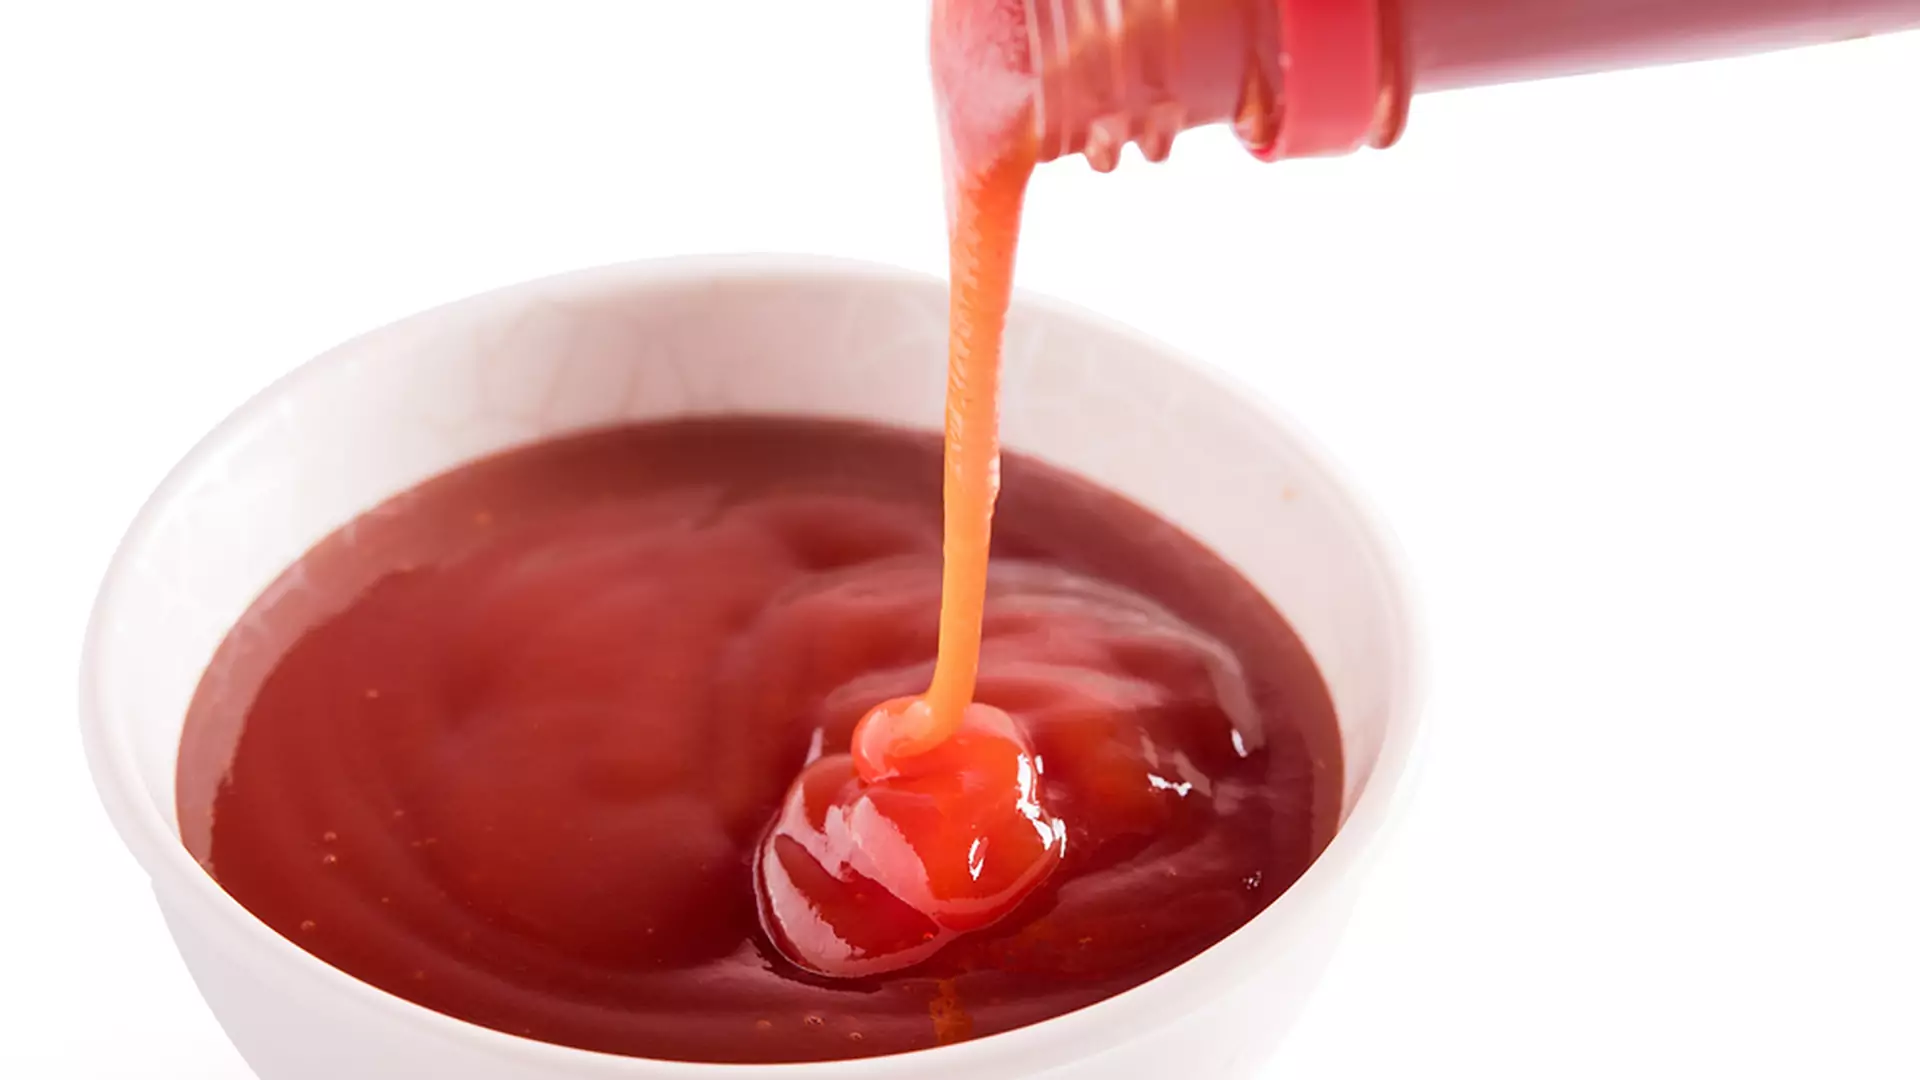 Genialny sposób na wykorzystanie ketchupu do ostatniej kropli [wideo]